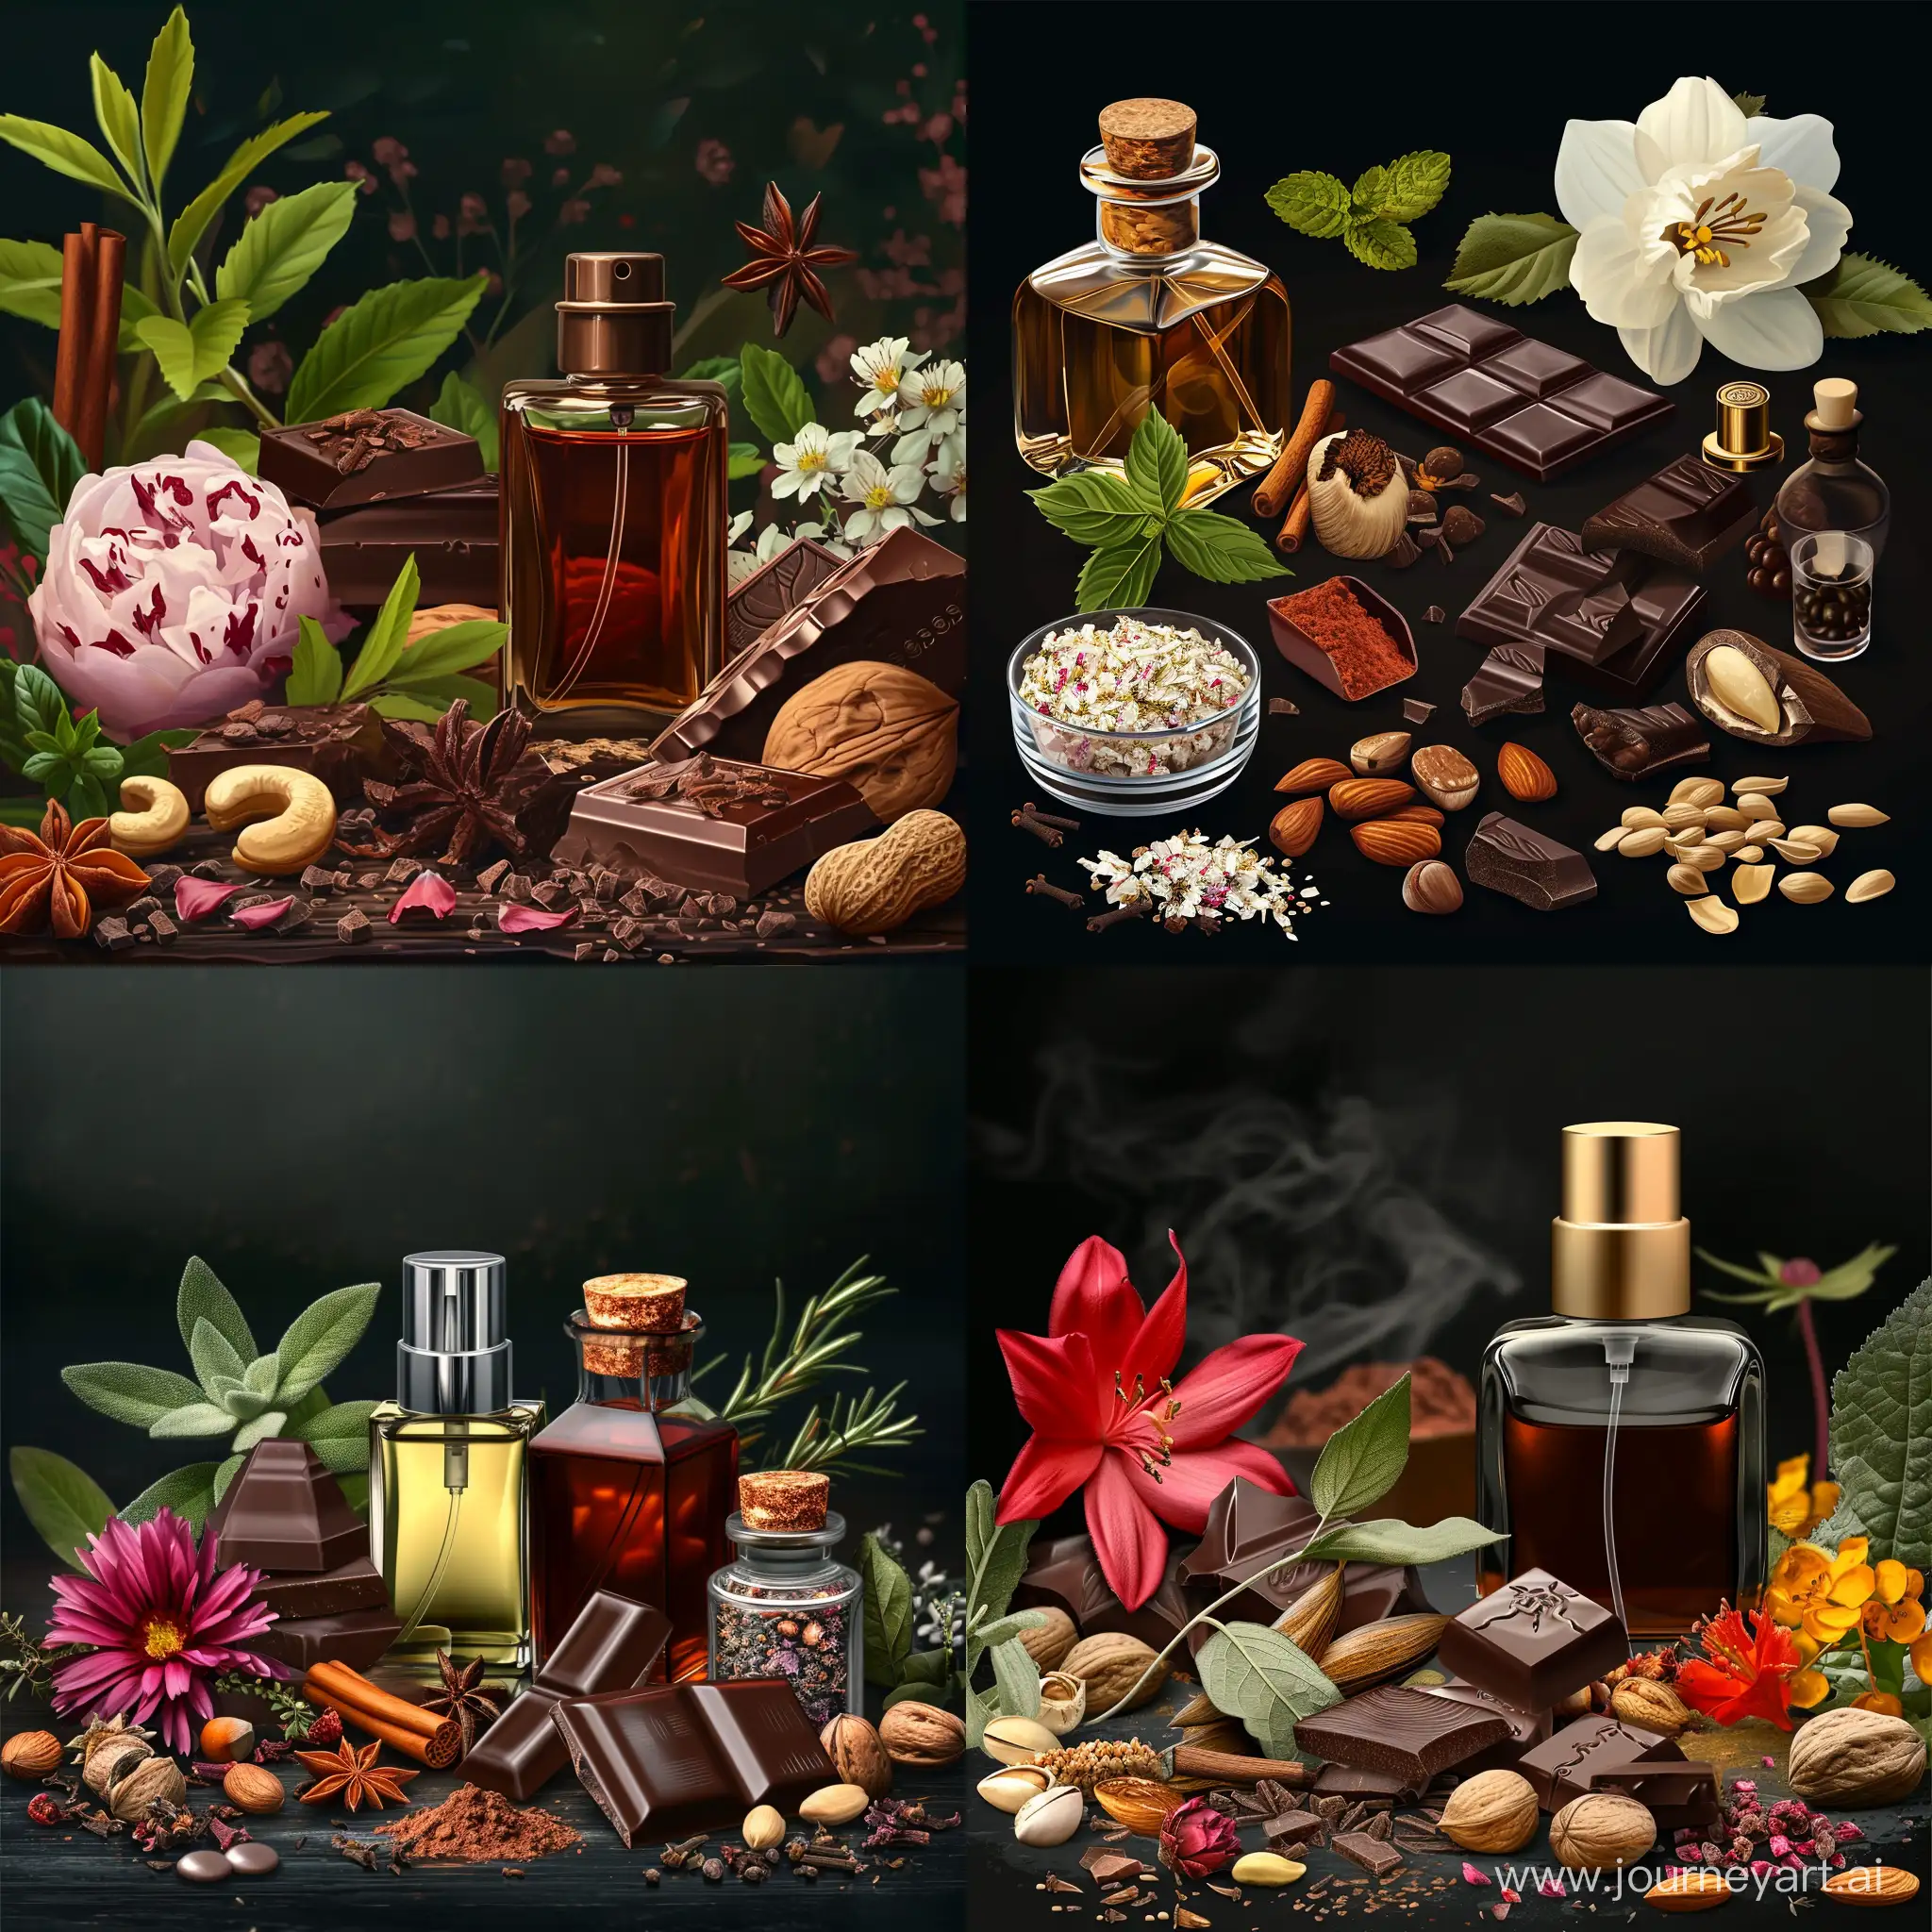 парфуми, лікарські трави, рідкісні квіти, шоколад, горіхи, спеції, реалістичний, детальний, темний загадковий фон, атмосферний